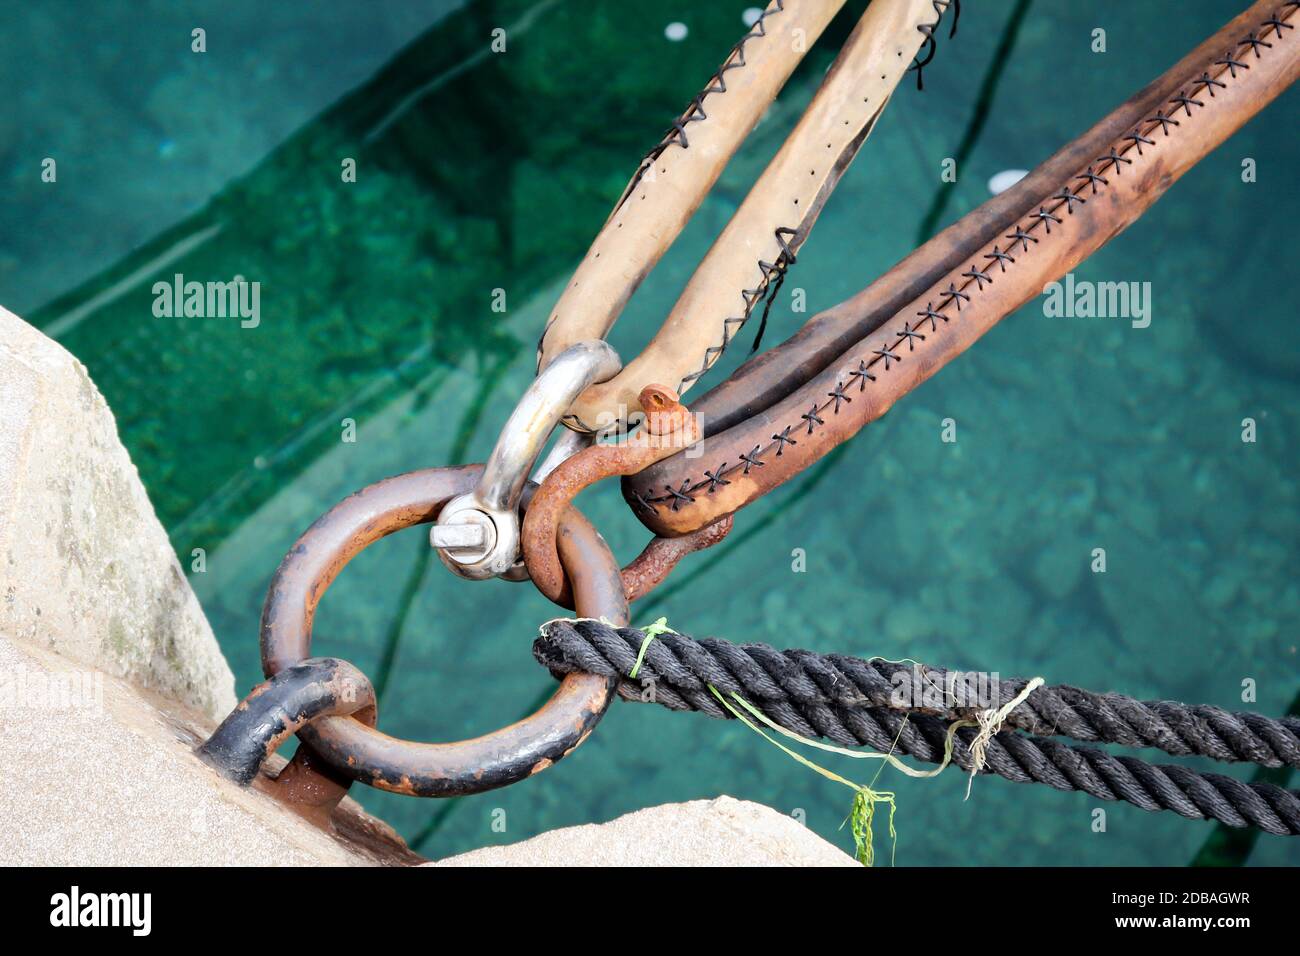 Viste dettagliate da uno yacht a vela in un porto Foto Stock